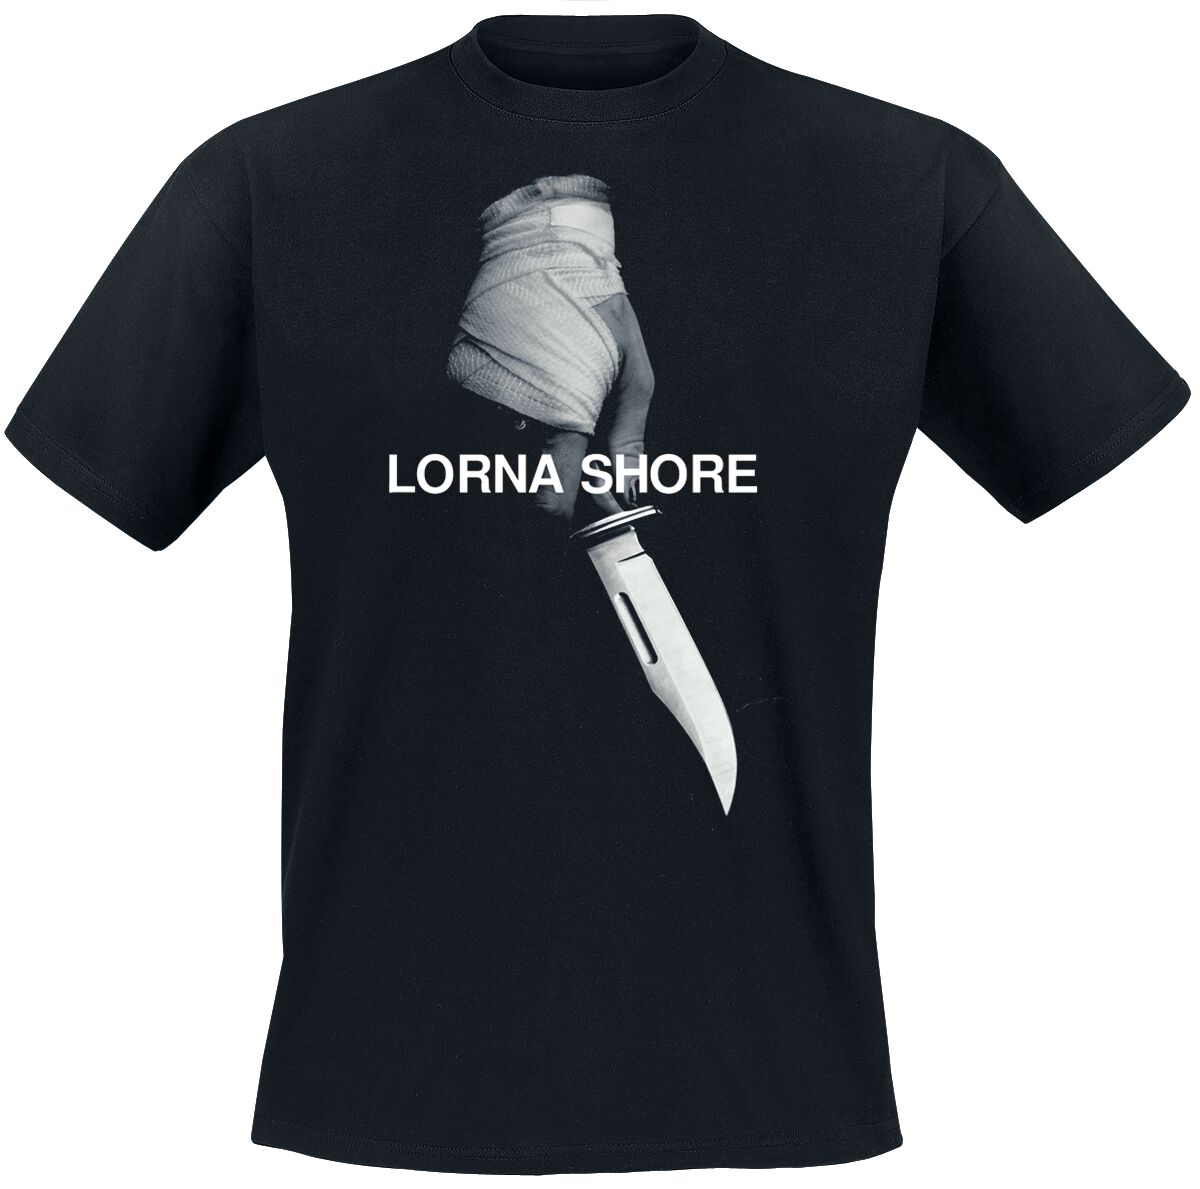 Lorna Shore T-Shirt - Pain remains - S bis XXL - für Männer - Größe XL - schwarz  - Lizenziertes Merchandise!